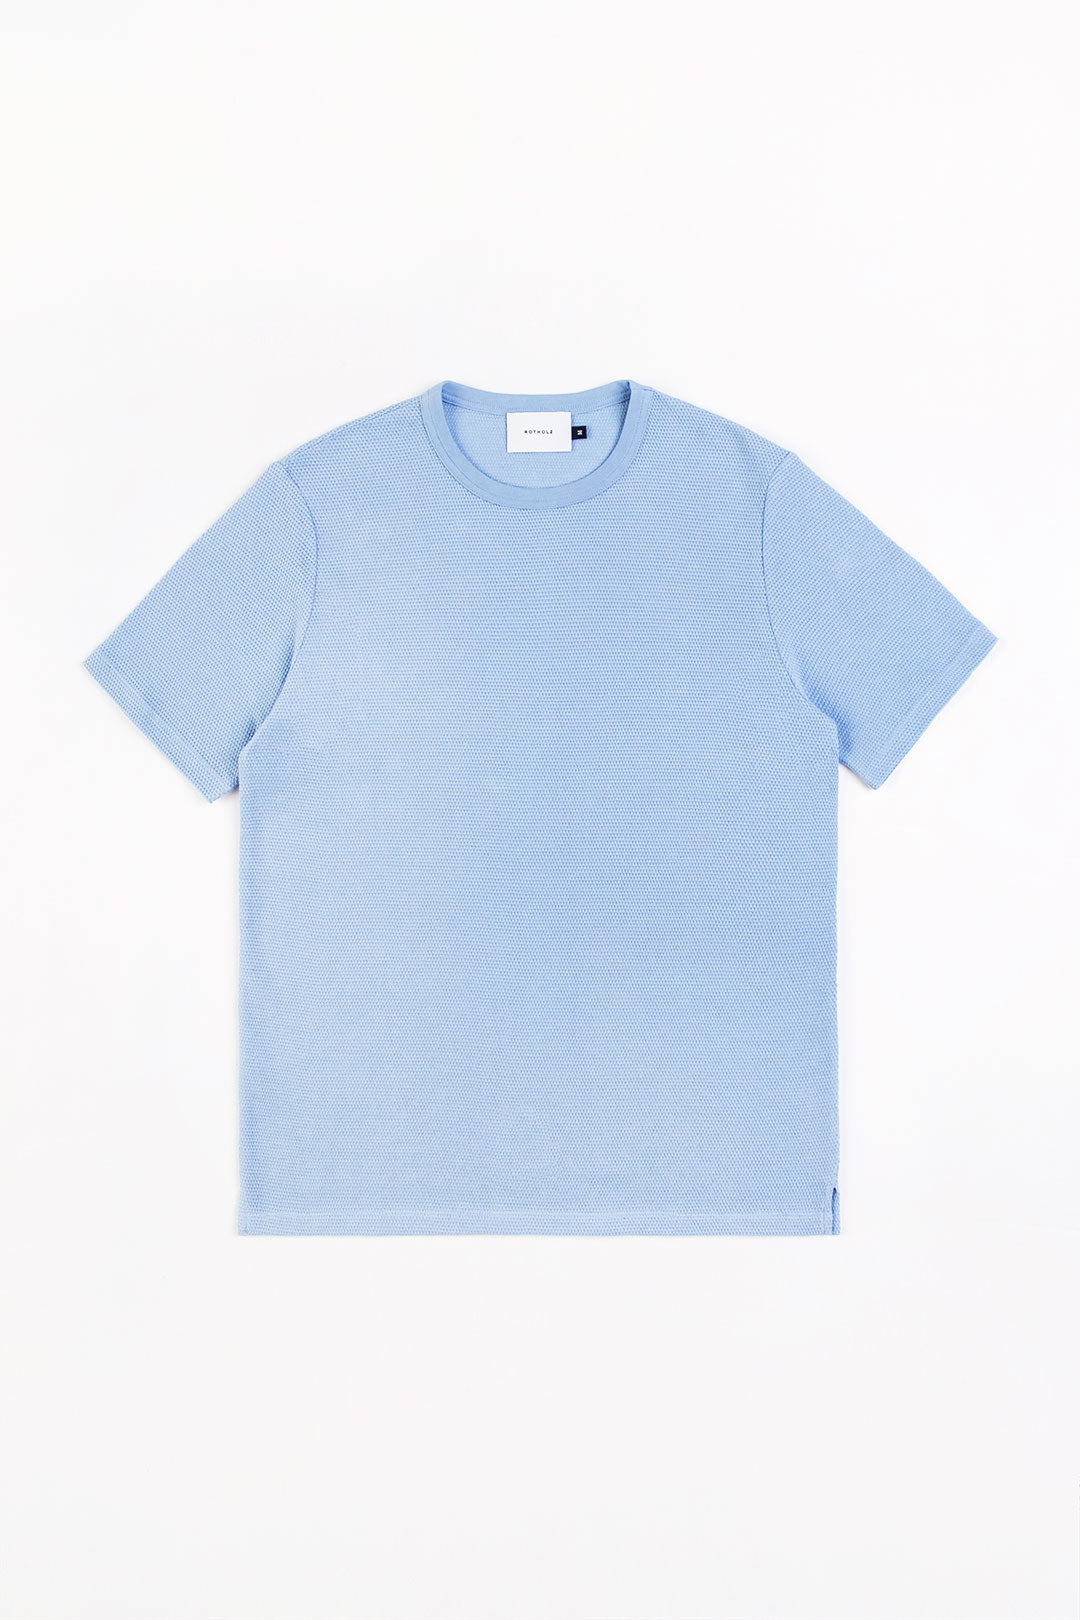 Hell-blaues T-Shirt aus aus 100% Bio-Baumwolle von Rotholz